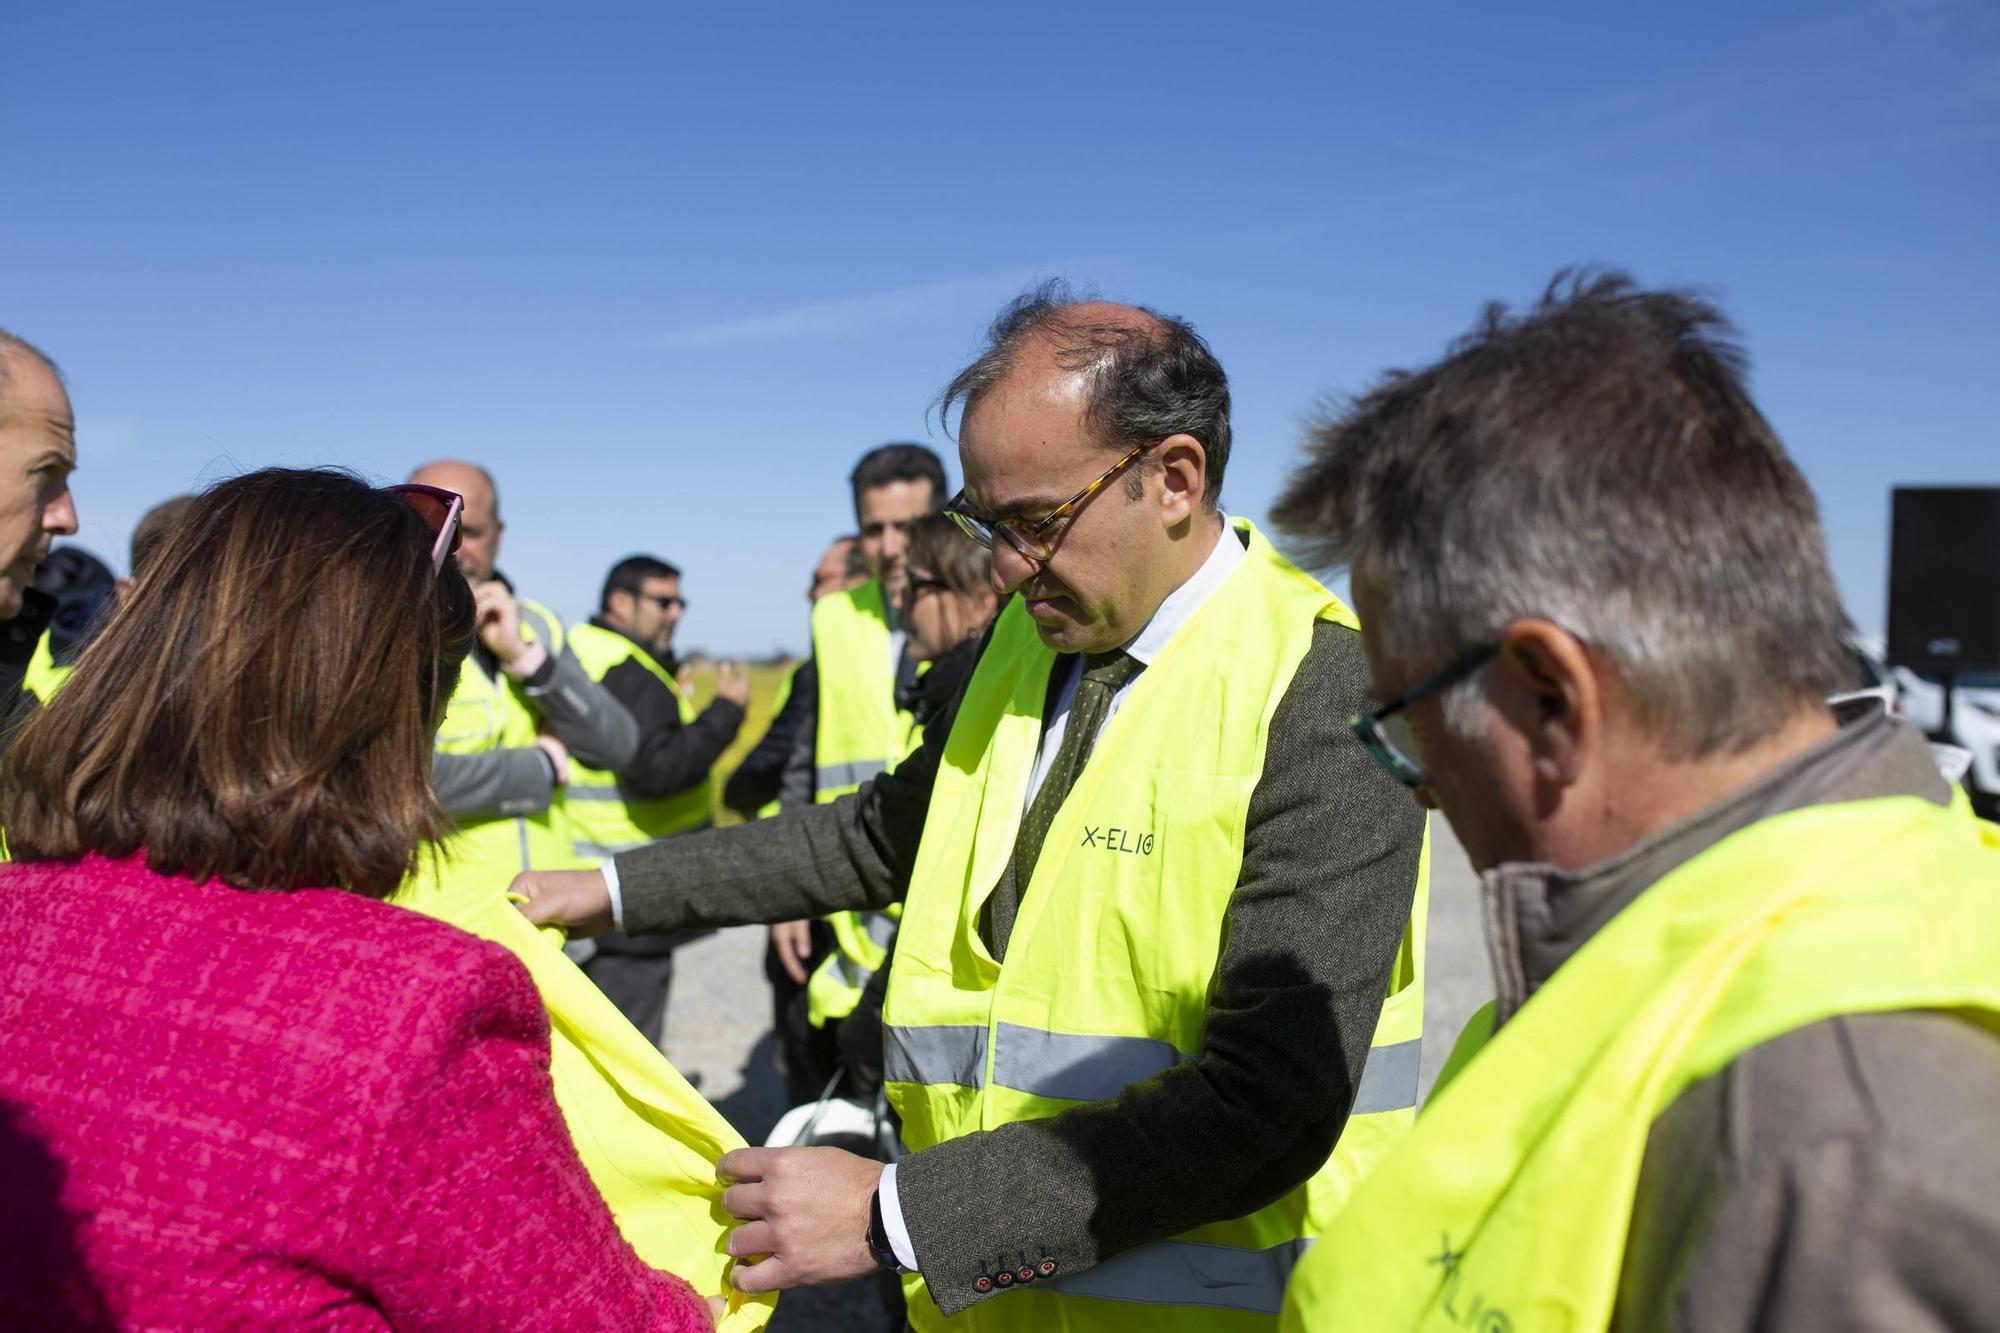 La planta fotovoltaica Arco I de Malpartida de Cáceres creará 300 puestos de trabajo y abastecerá a 20.525 hogares cada año